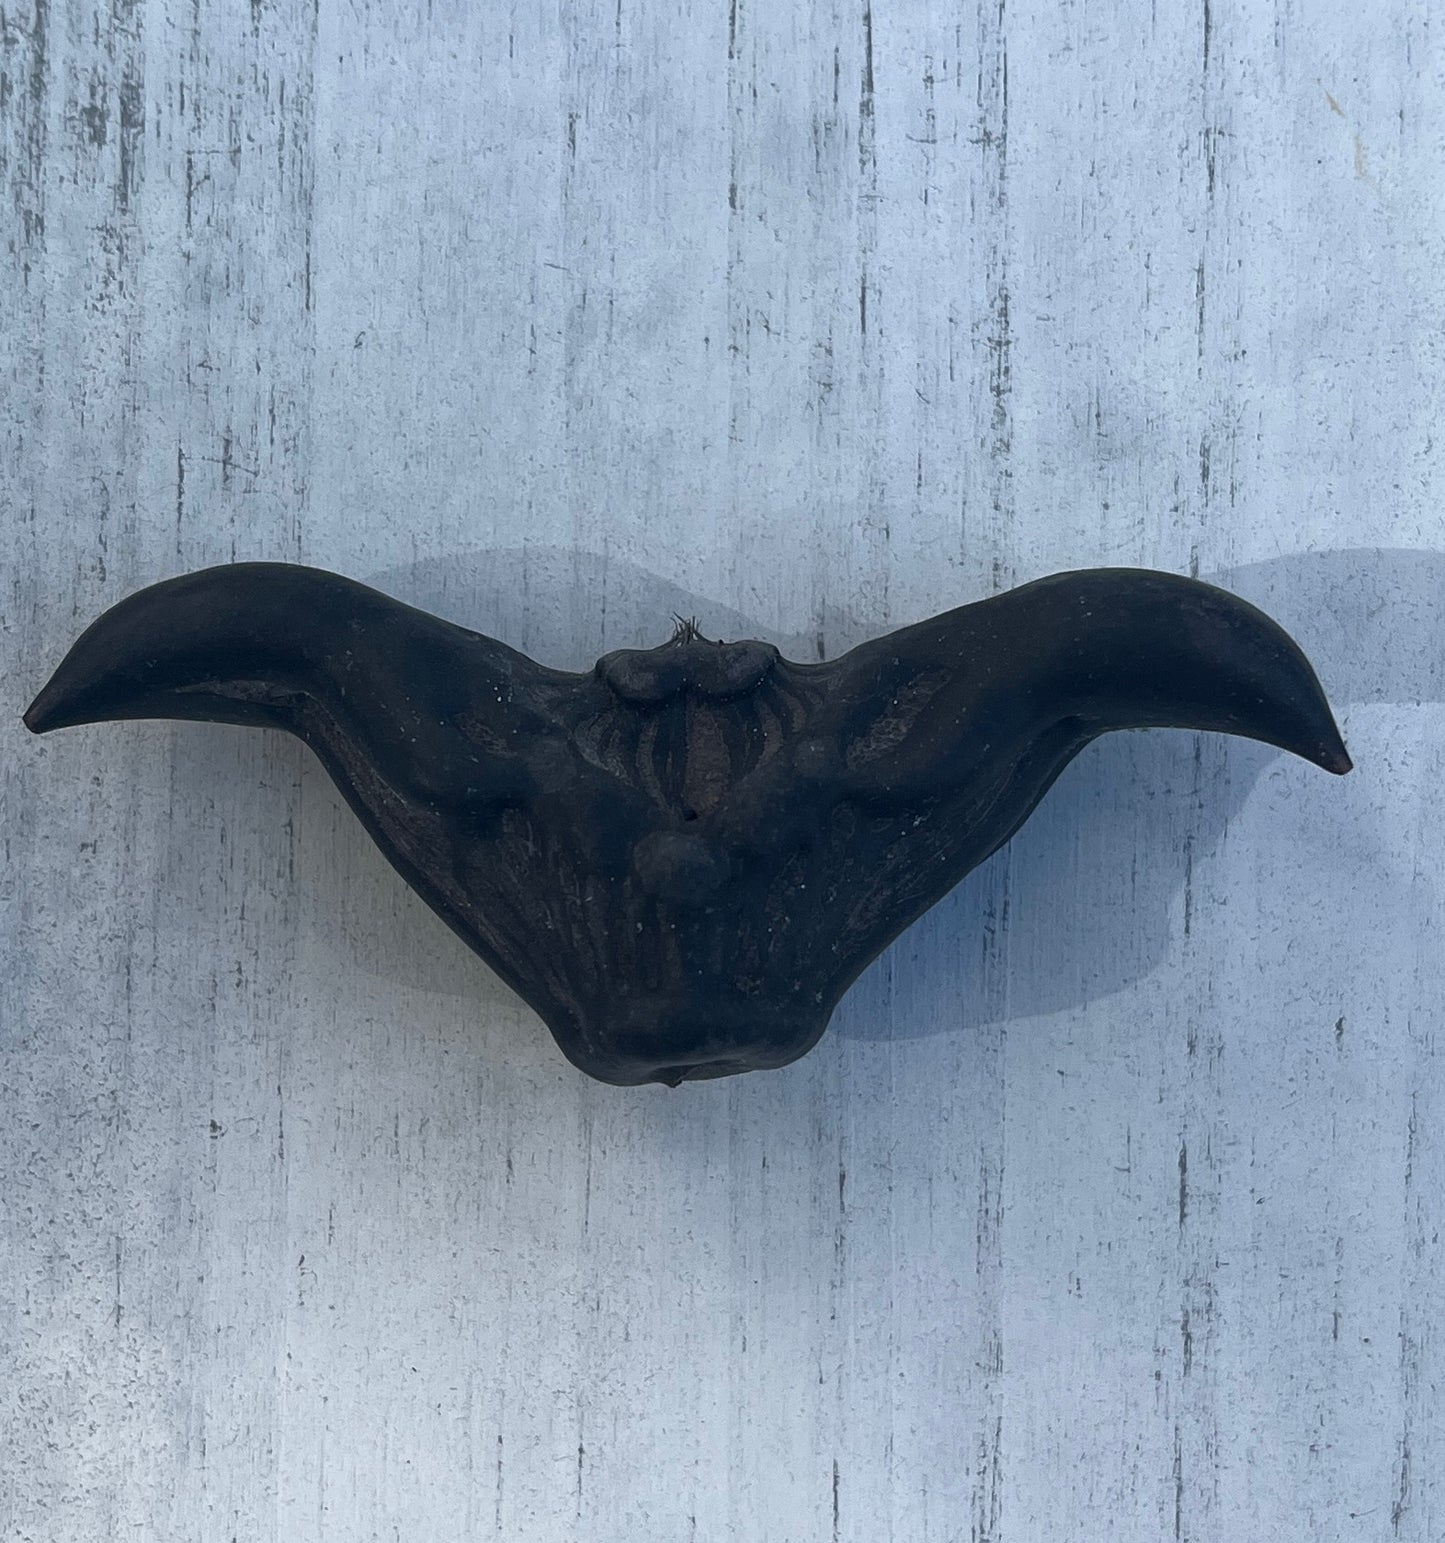 Large caltrop (bat nut, devil pod)